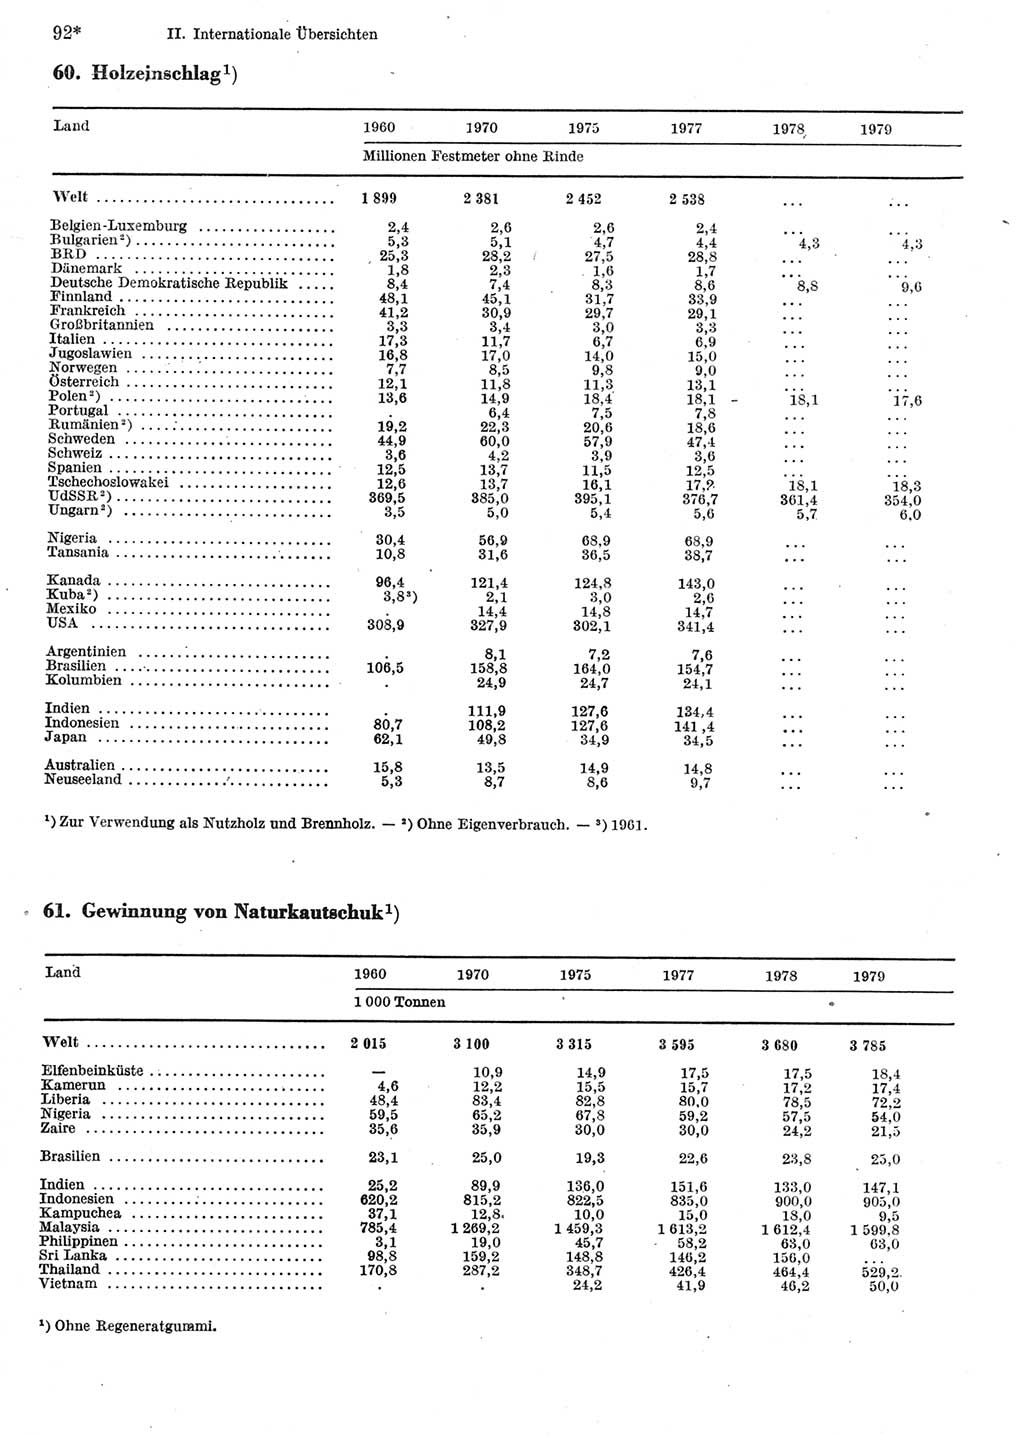 Statistisches Jahrbuch der Deutschen Demokratischen Republik (DDR) 1981, Seite 92 (Stat. Jb. DDR 1981, S. 92)